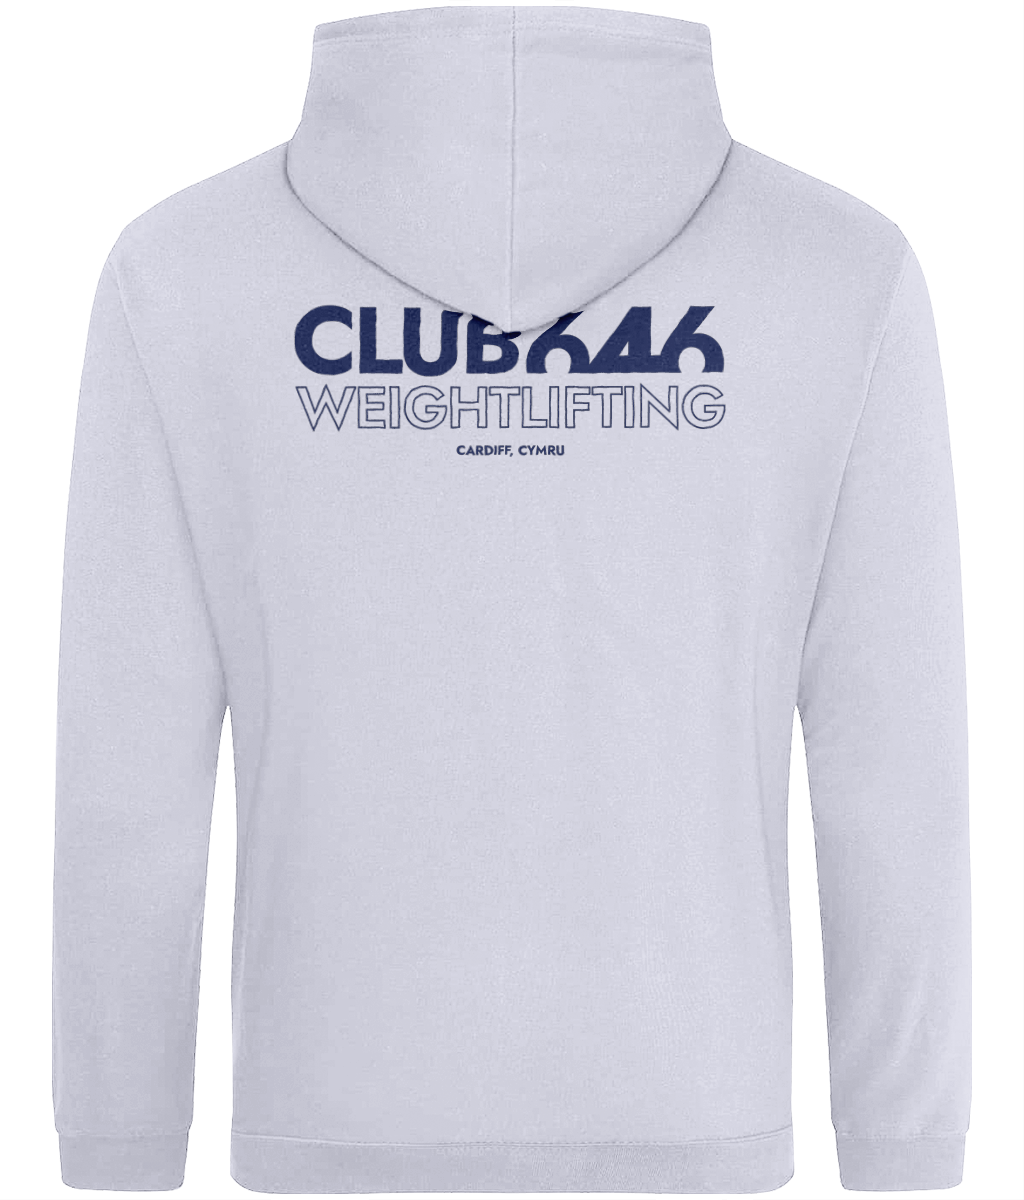 Club 646 (blue) hoodie